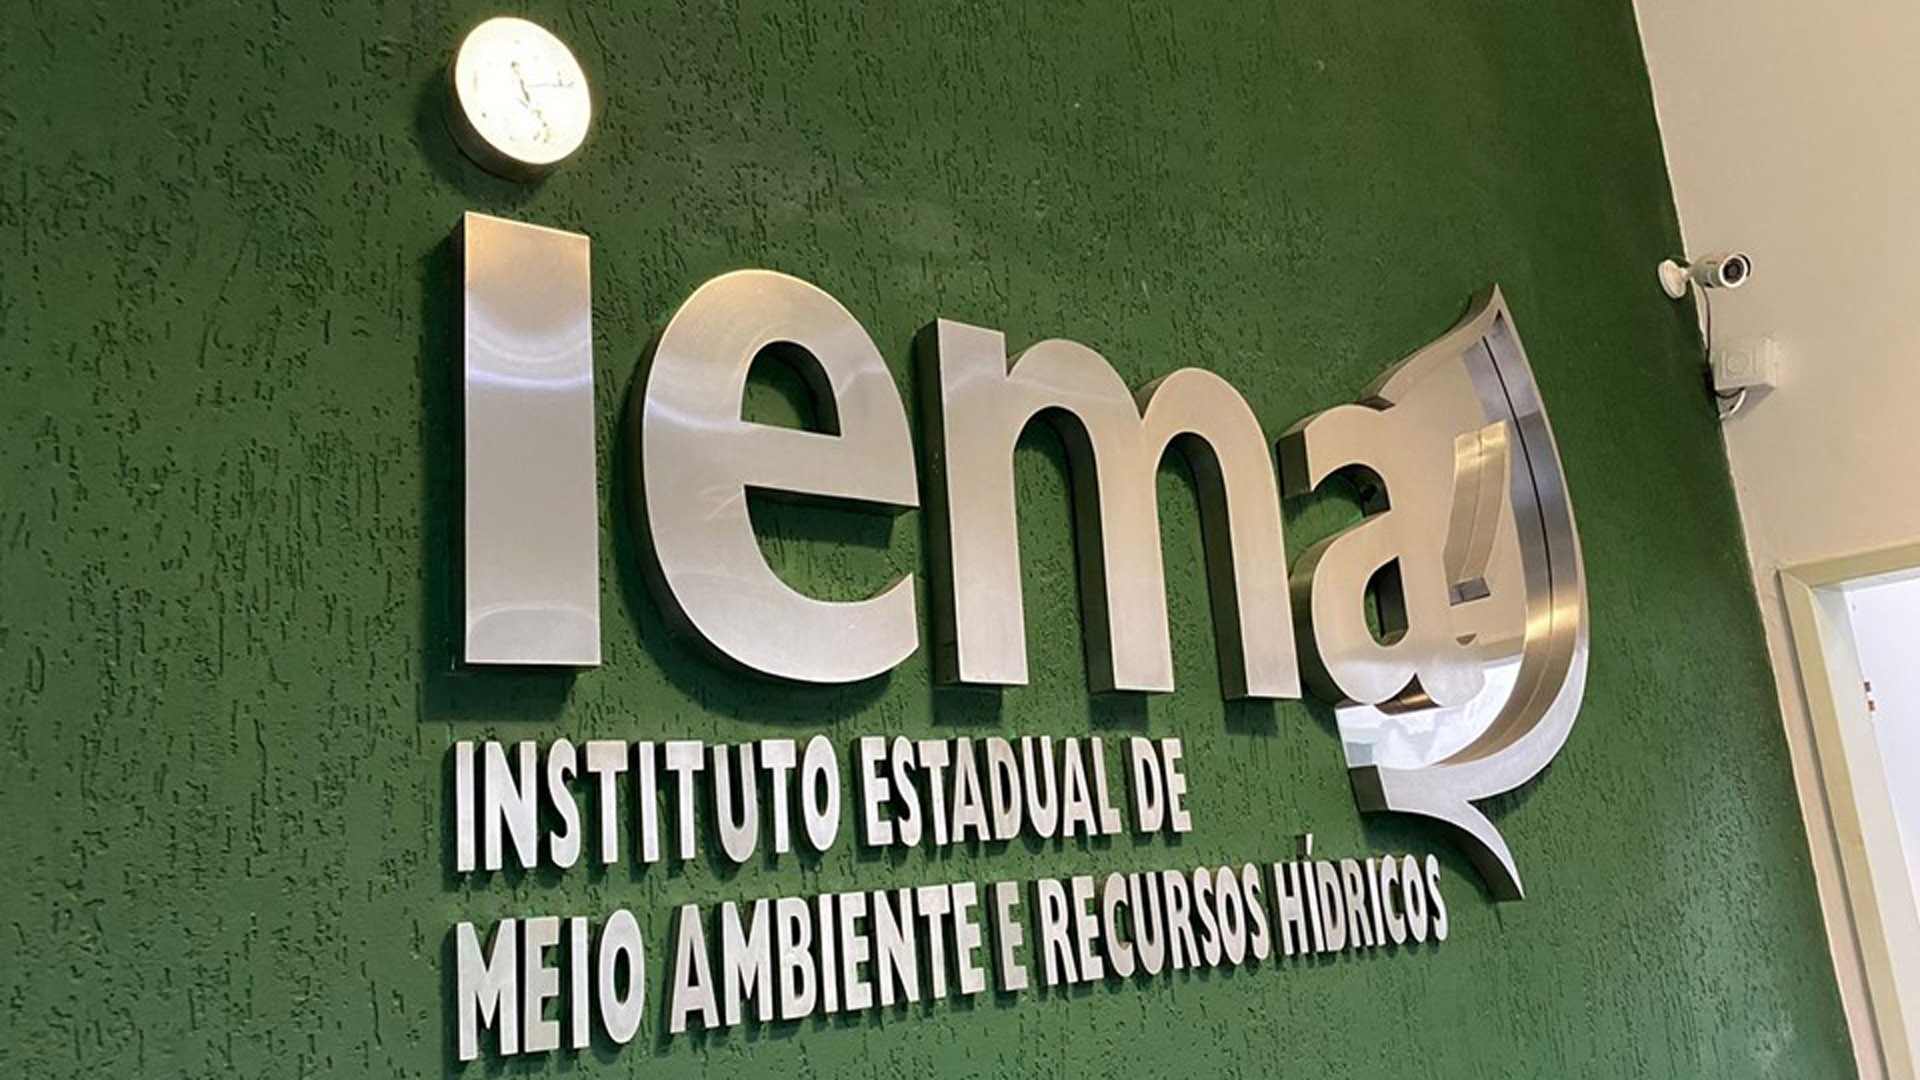 IEMA anuncia abertura de inscrições de novo concurso público com salários de mais de R$ 6 mil por mês